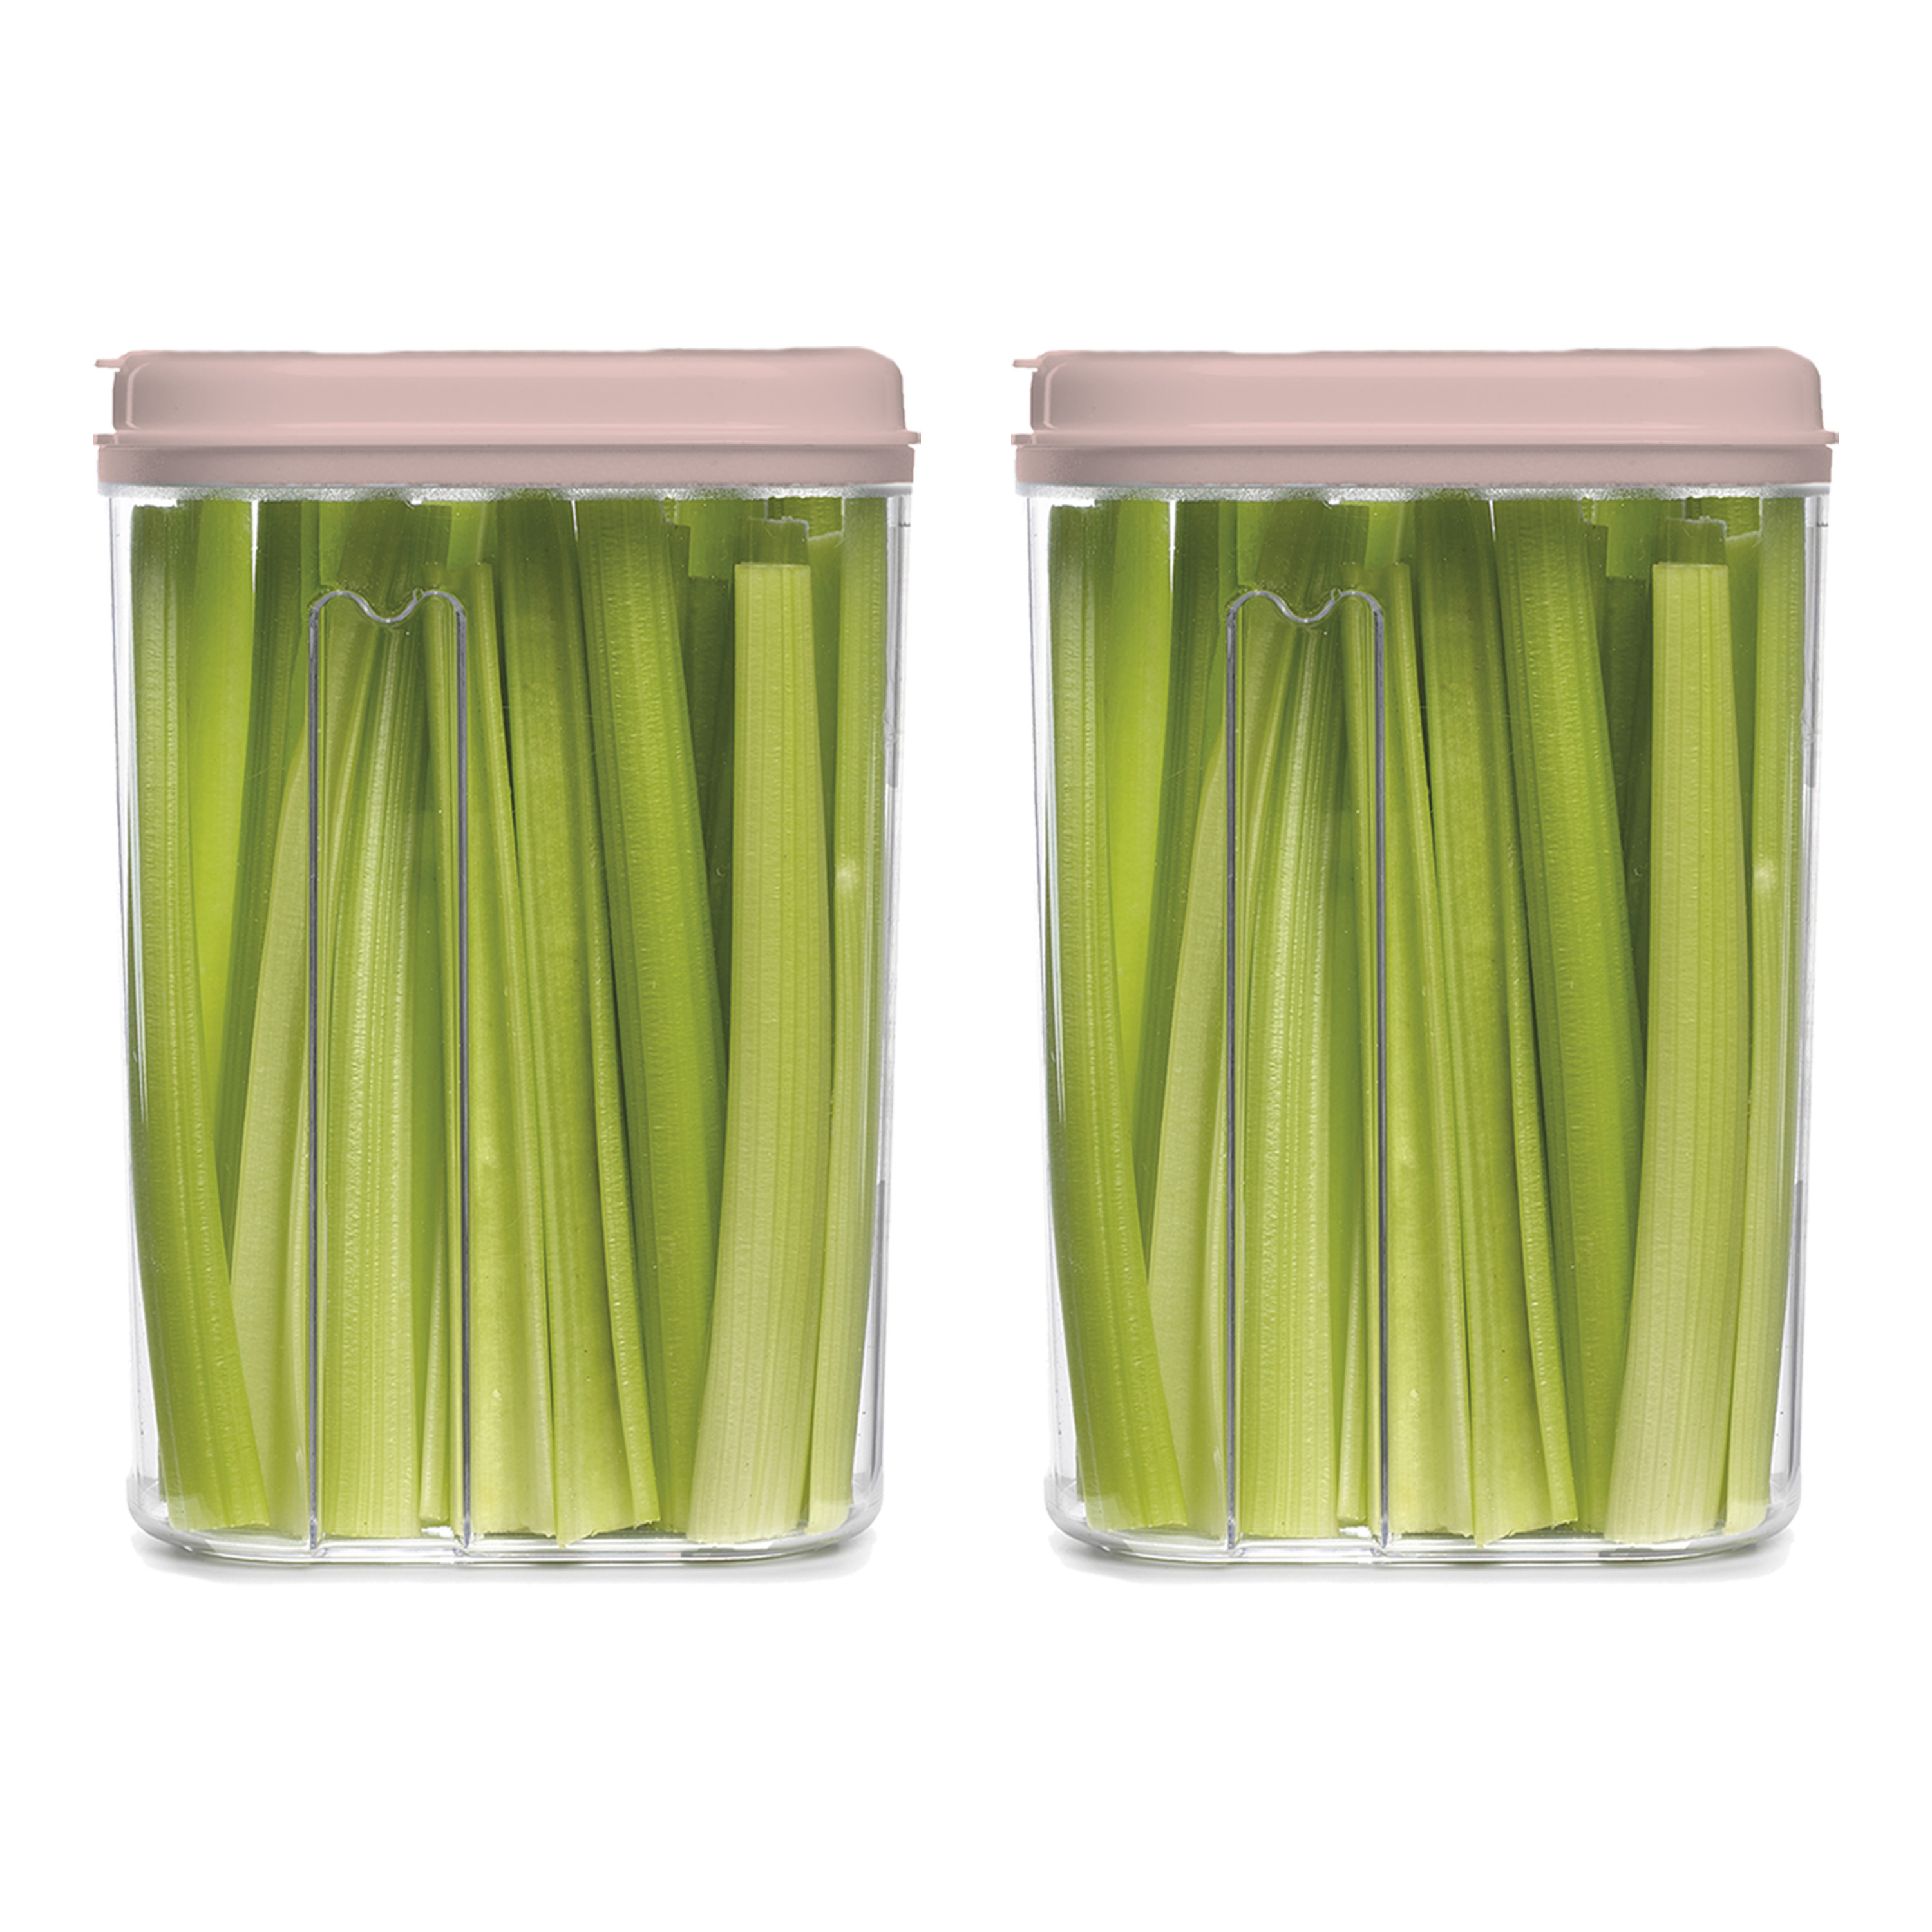 PlasticForte Voedselcontainer strooibus - 2x - lichtroze - 1500 ml - kunststof - 15 x 8 x 23 cm - voorraadpot -